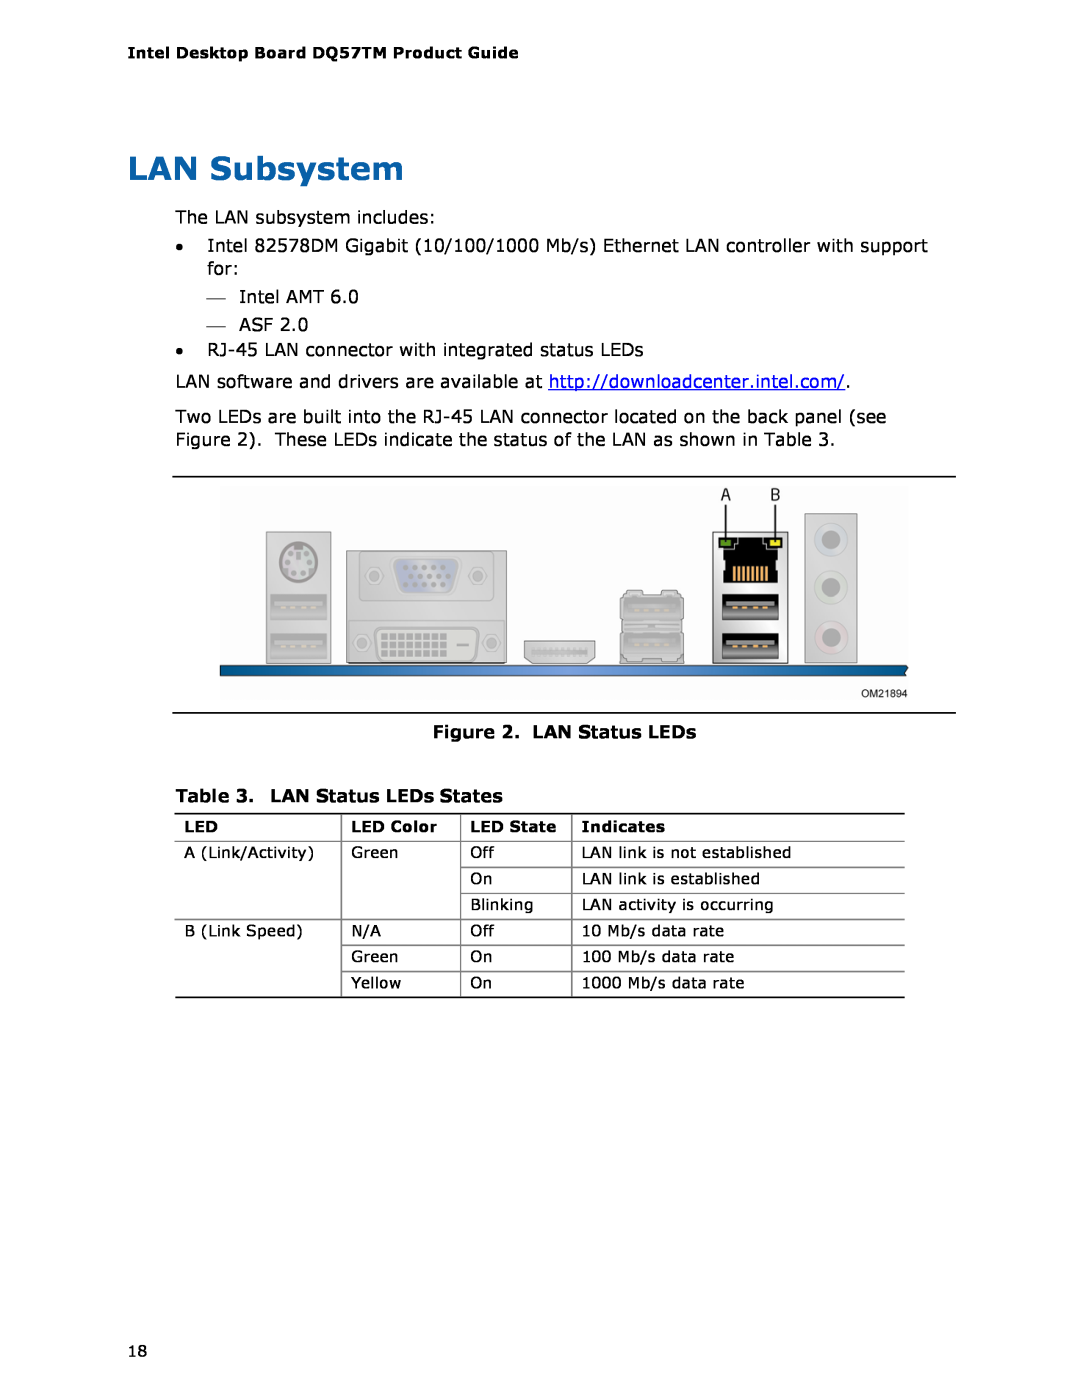 Intel DQ57TM manual LAN Subsystem, LAN Status LEDs States 